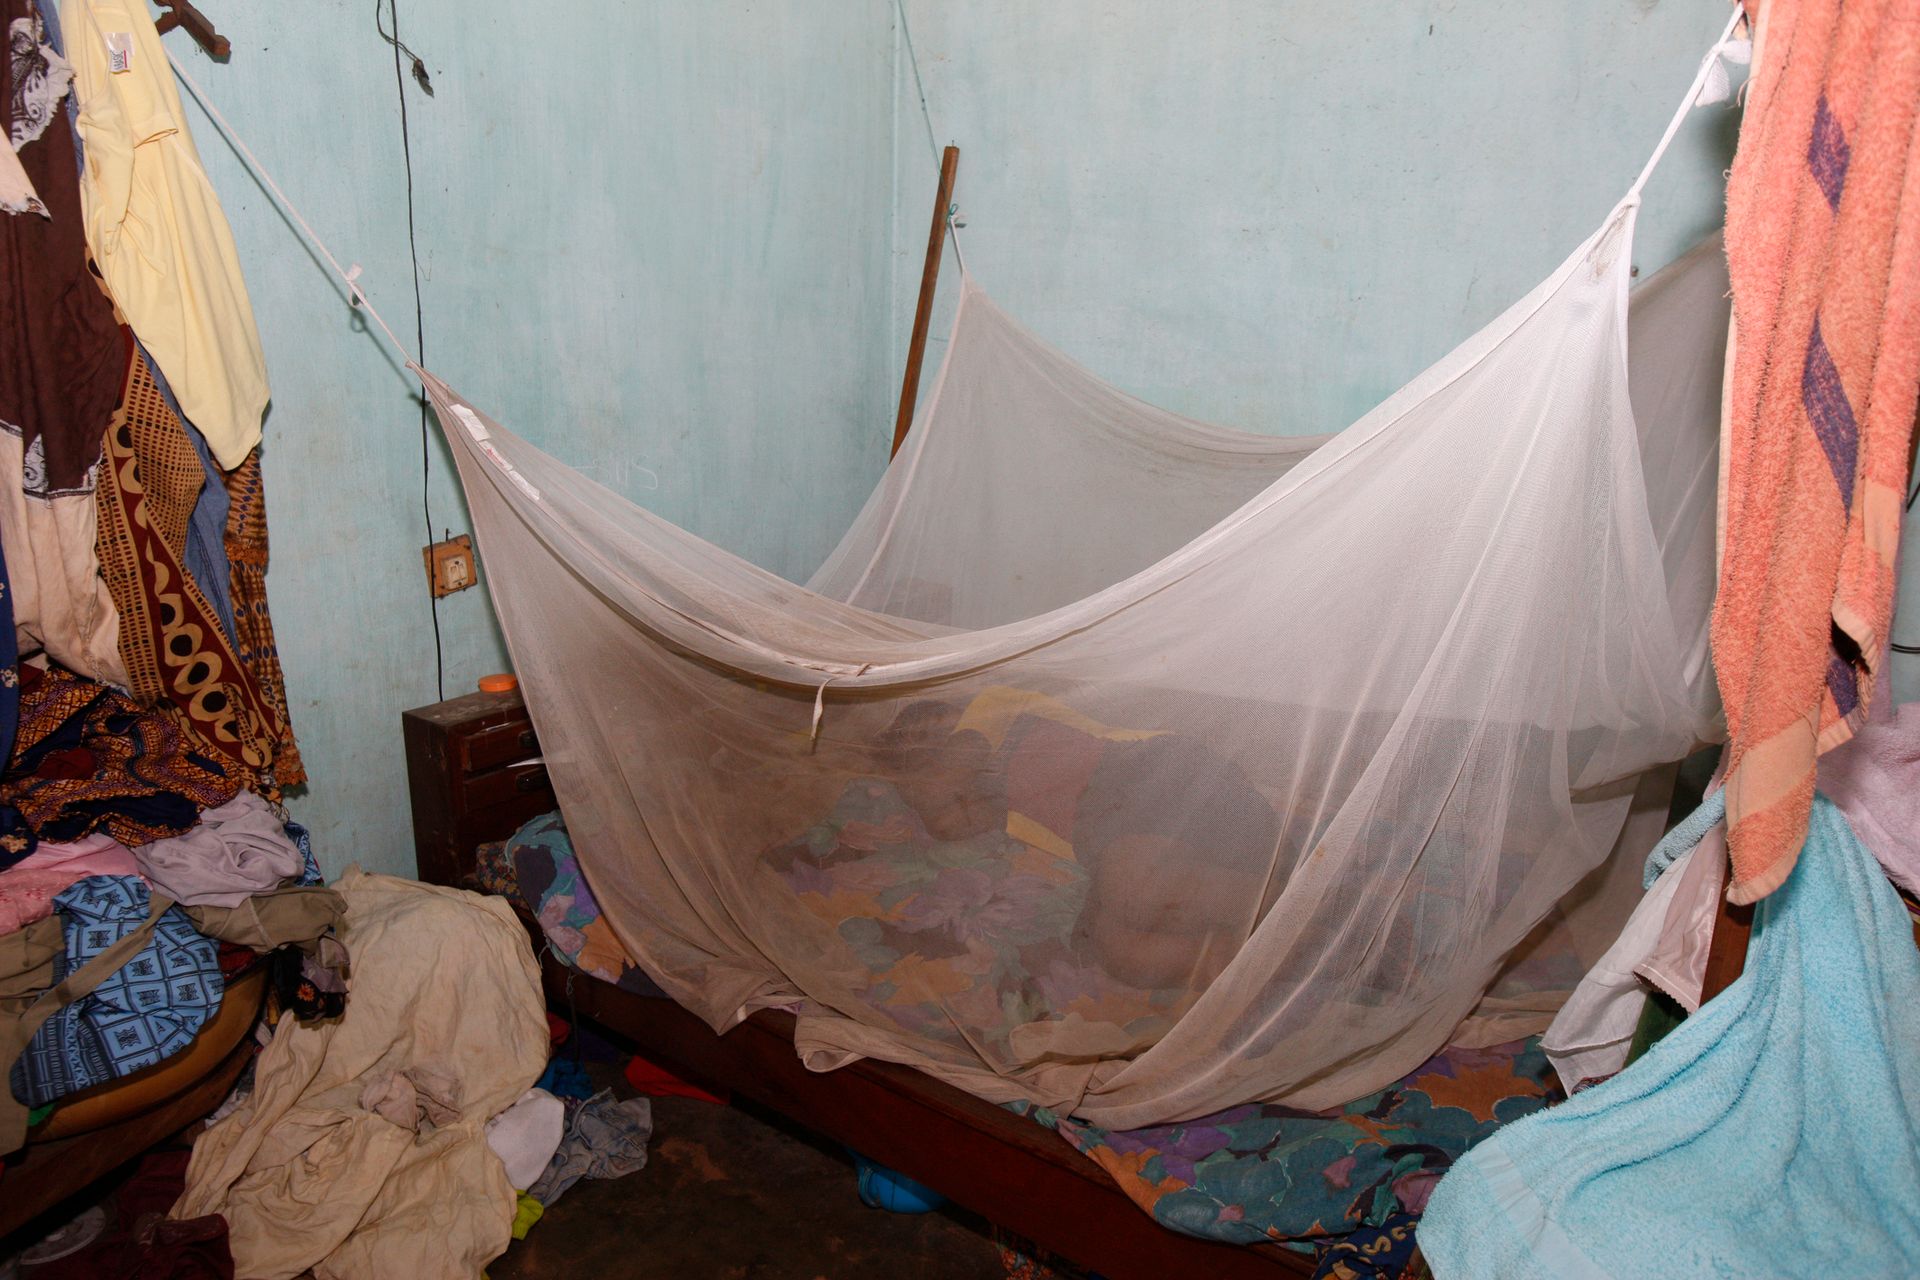 Moustiquaire dans le cadre de la prévention de la malaria